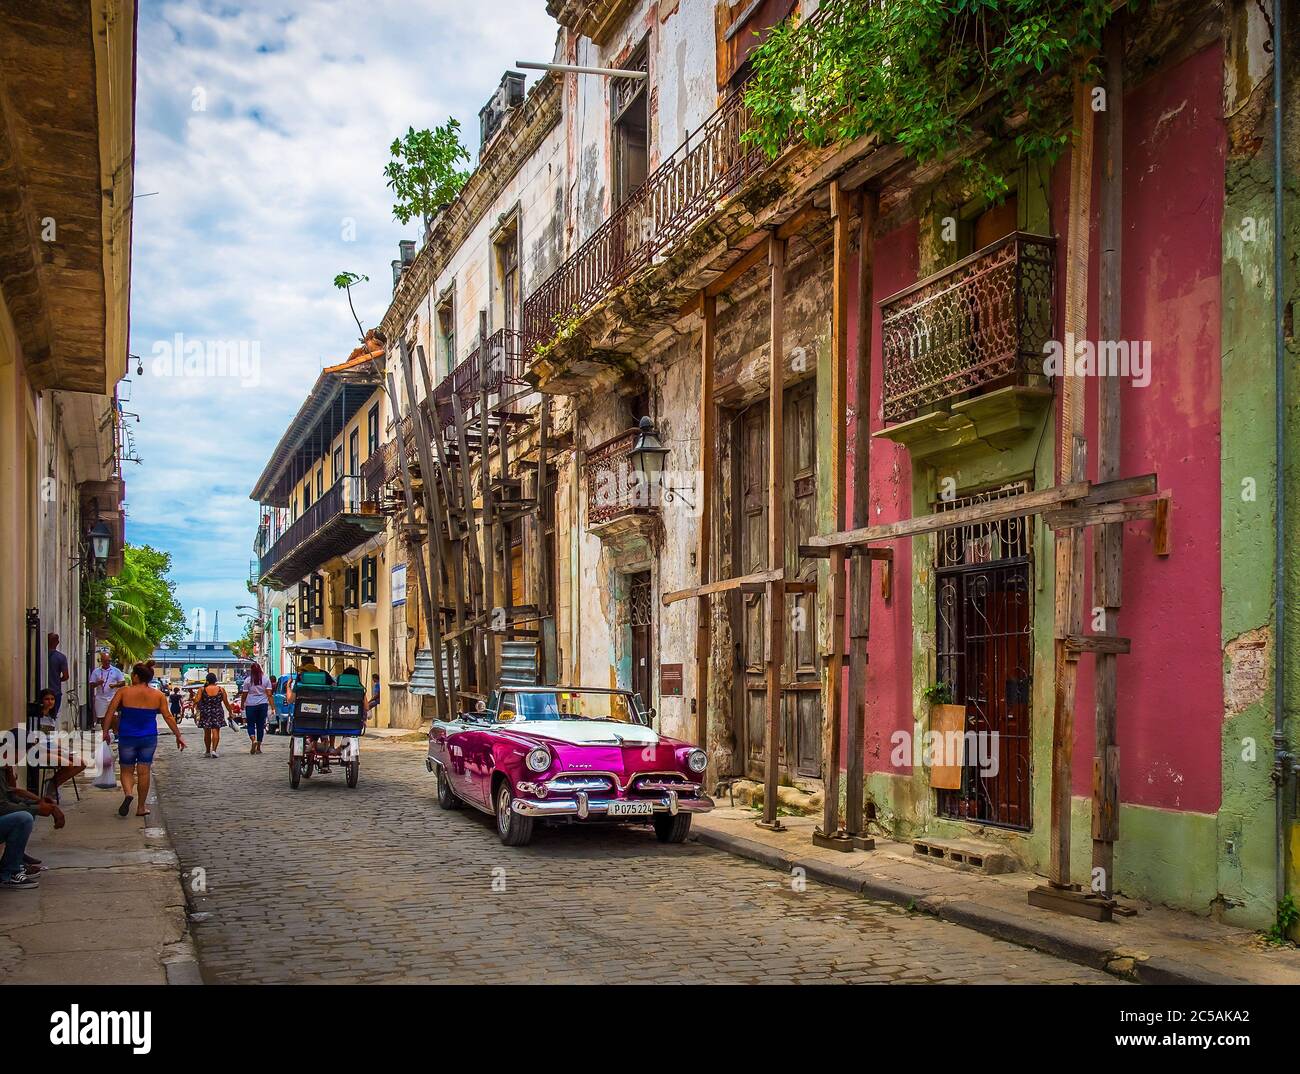 La Havane, Cuba, juillet 2019, scène urbaine avec une voiture Dodge de location pourpre des années 50 garée dans la rue dans la partie la plus ancienne de la ville Banque D'Images